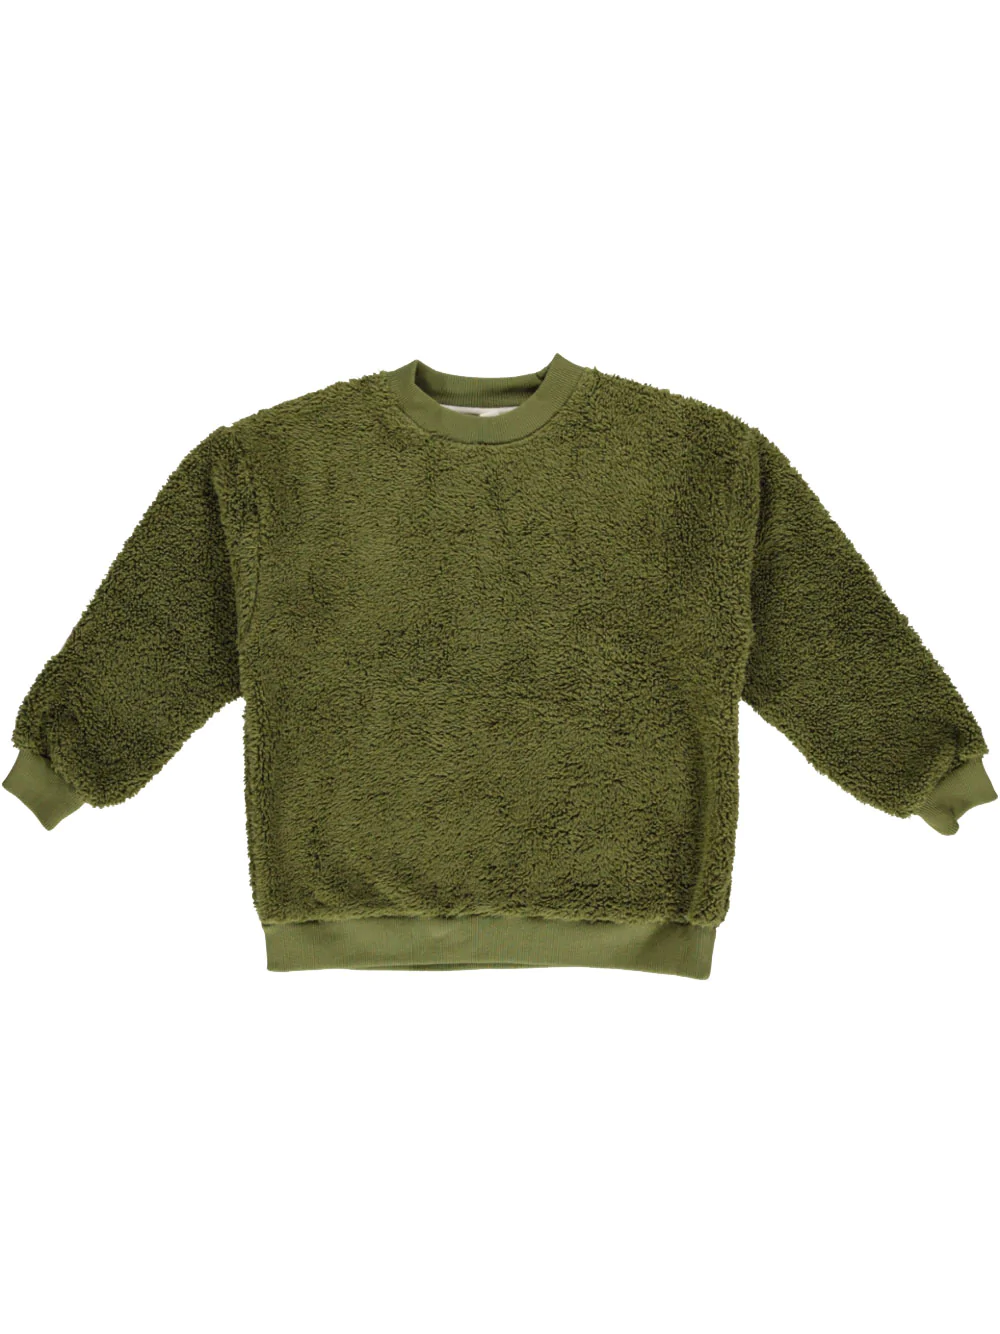 Liilu Teddy Sweater - 2Y, 4Y, 6Y